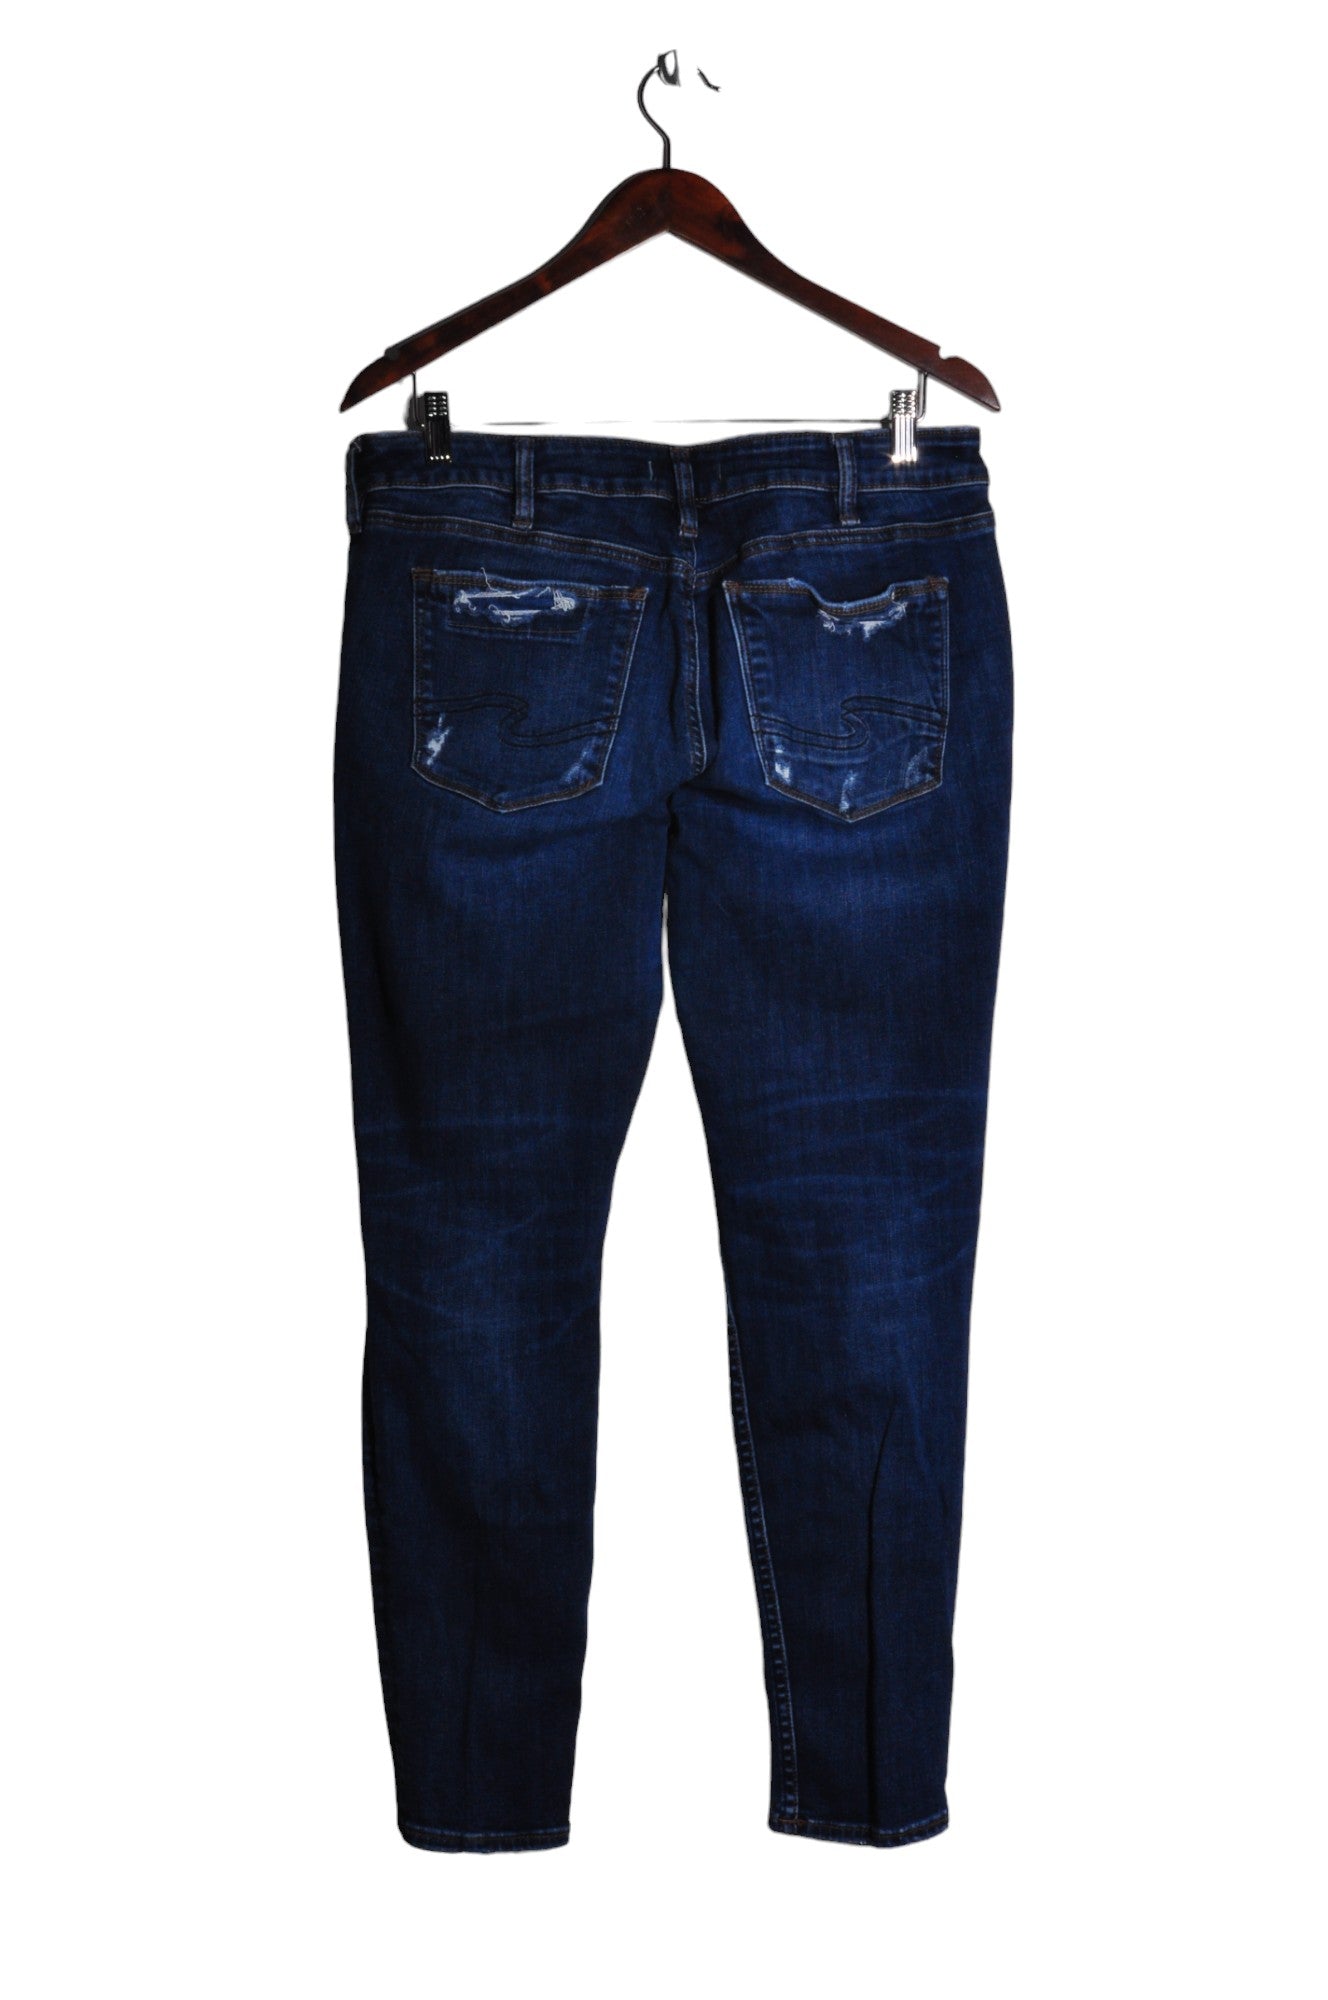 SILVER JEANS CO. Women Straight-Legged Jeans Regular fit in Blue - Size 33x29 | 45.6 $ KOOP